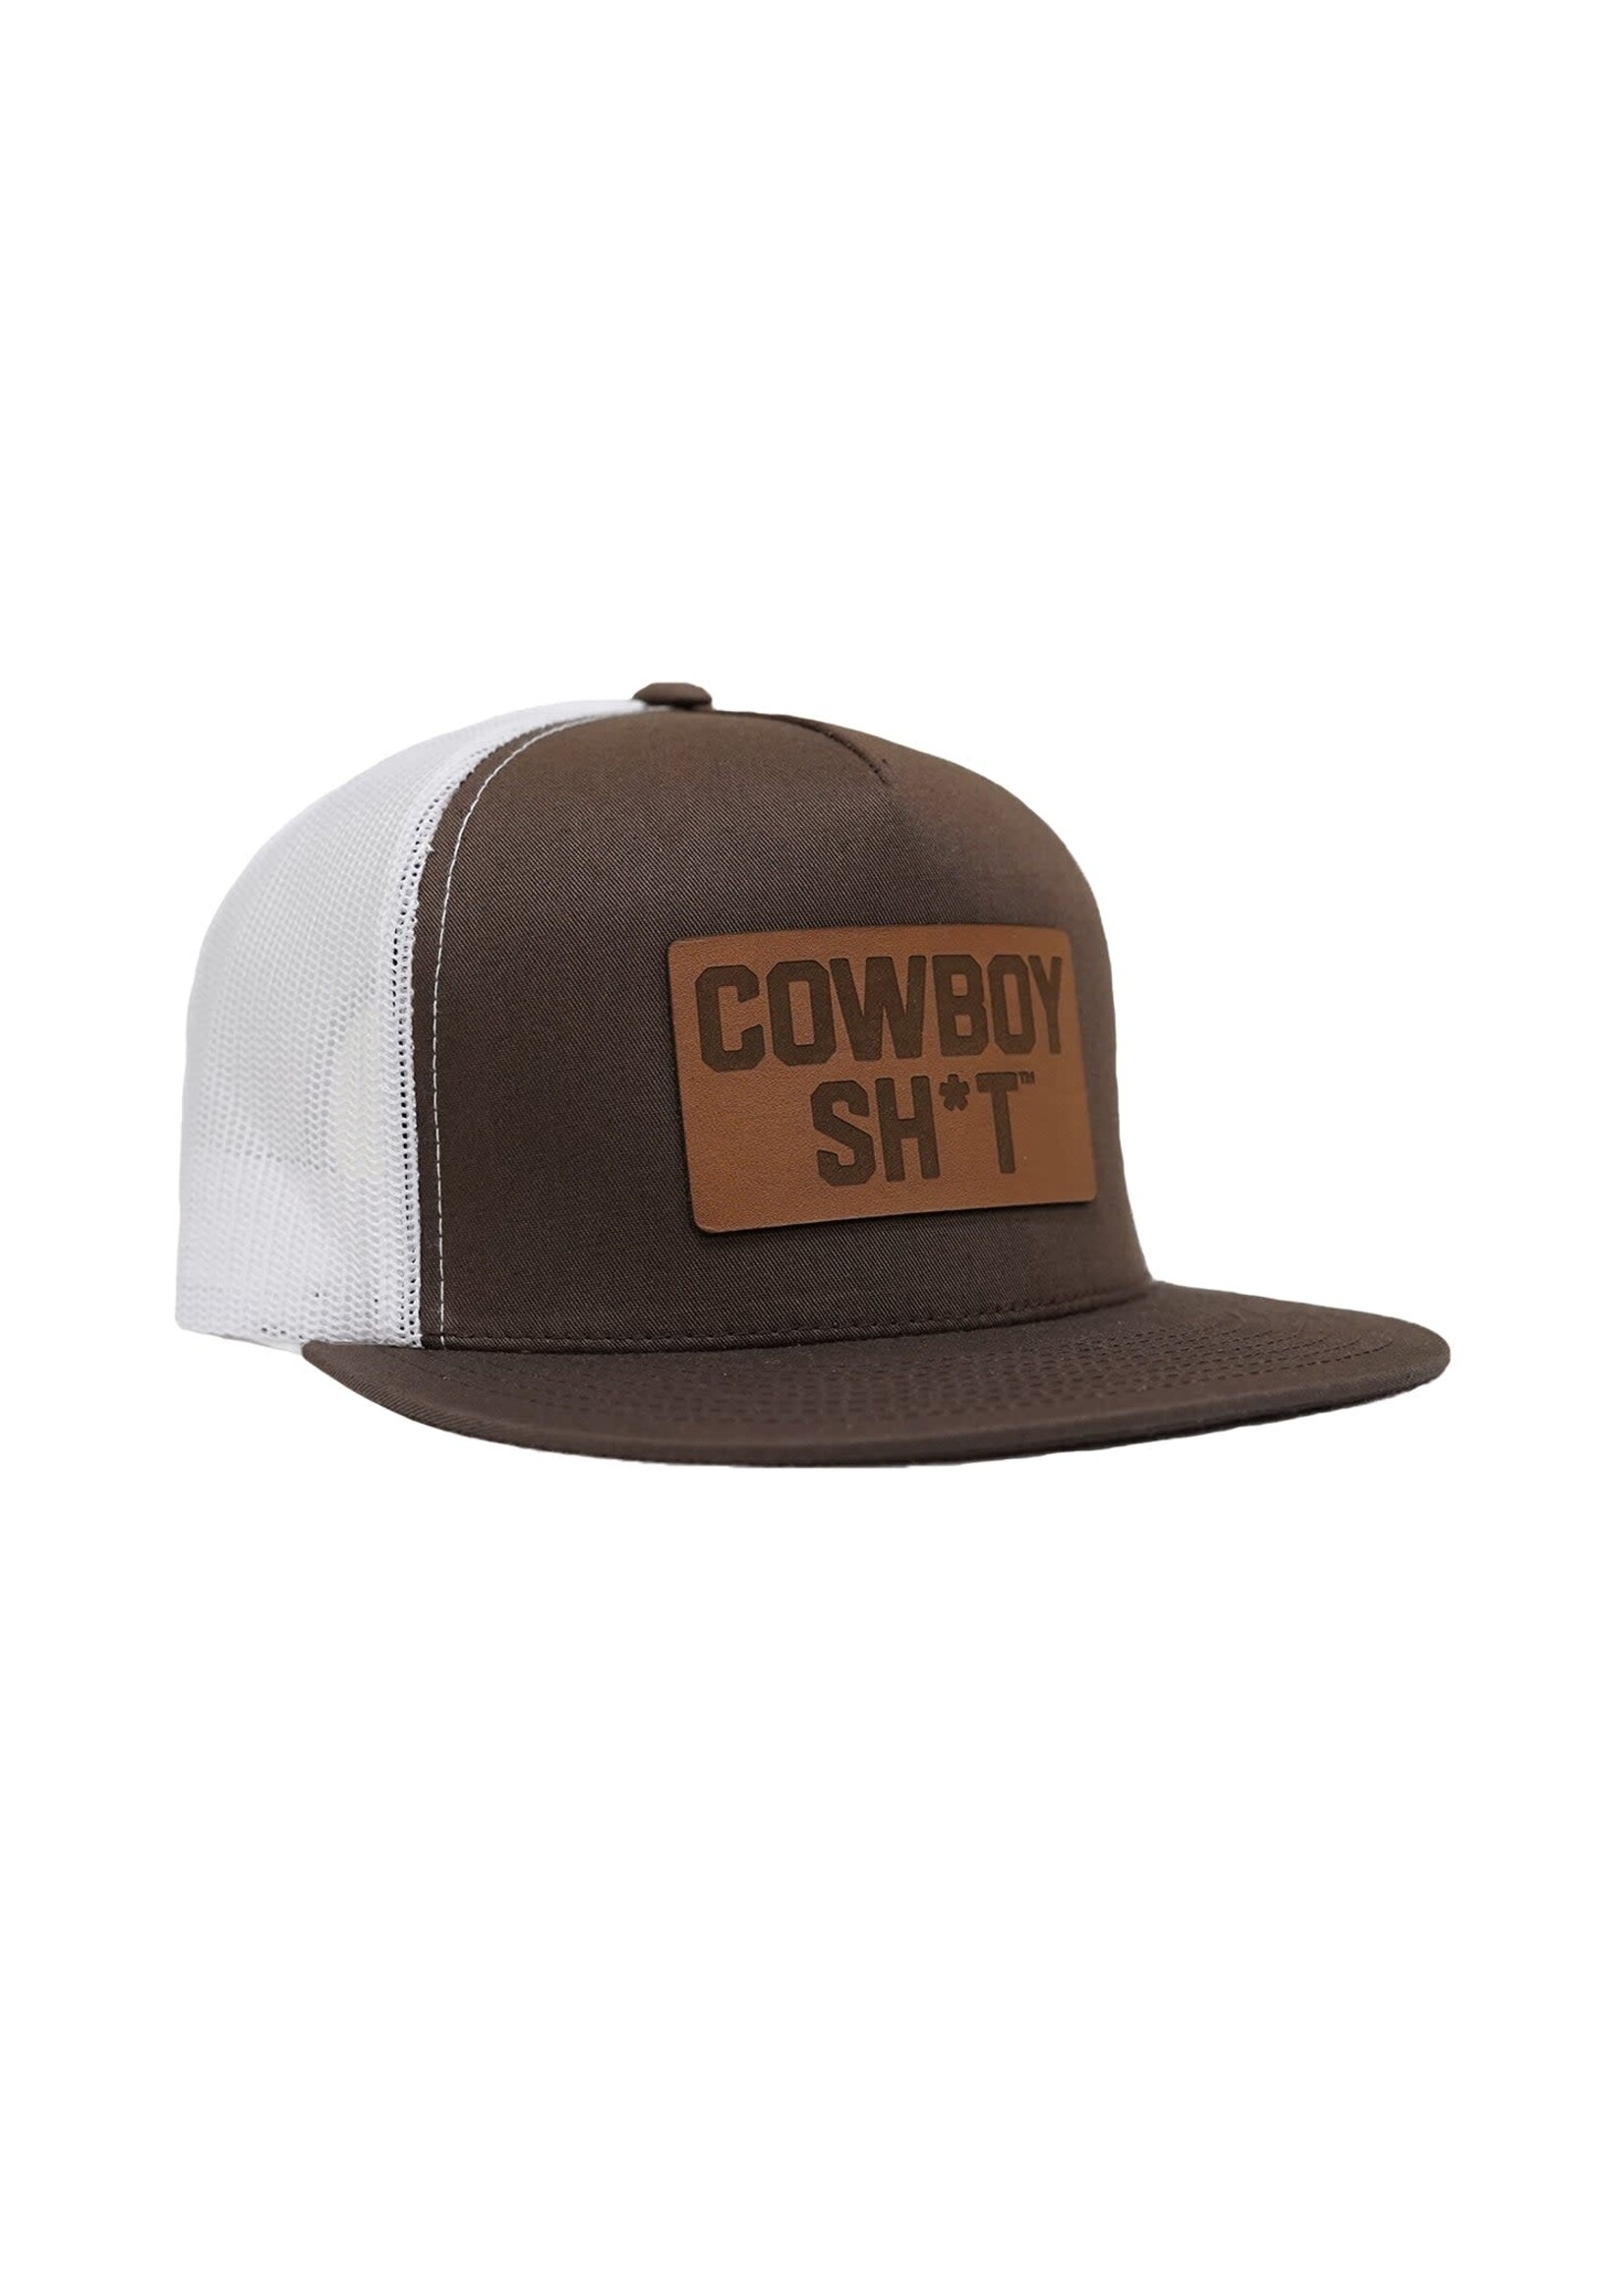 Cowboy Shit COWBOY SHIT BROWN/WHITE FLAT BRIM LEATHER PATCH 100